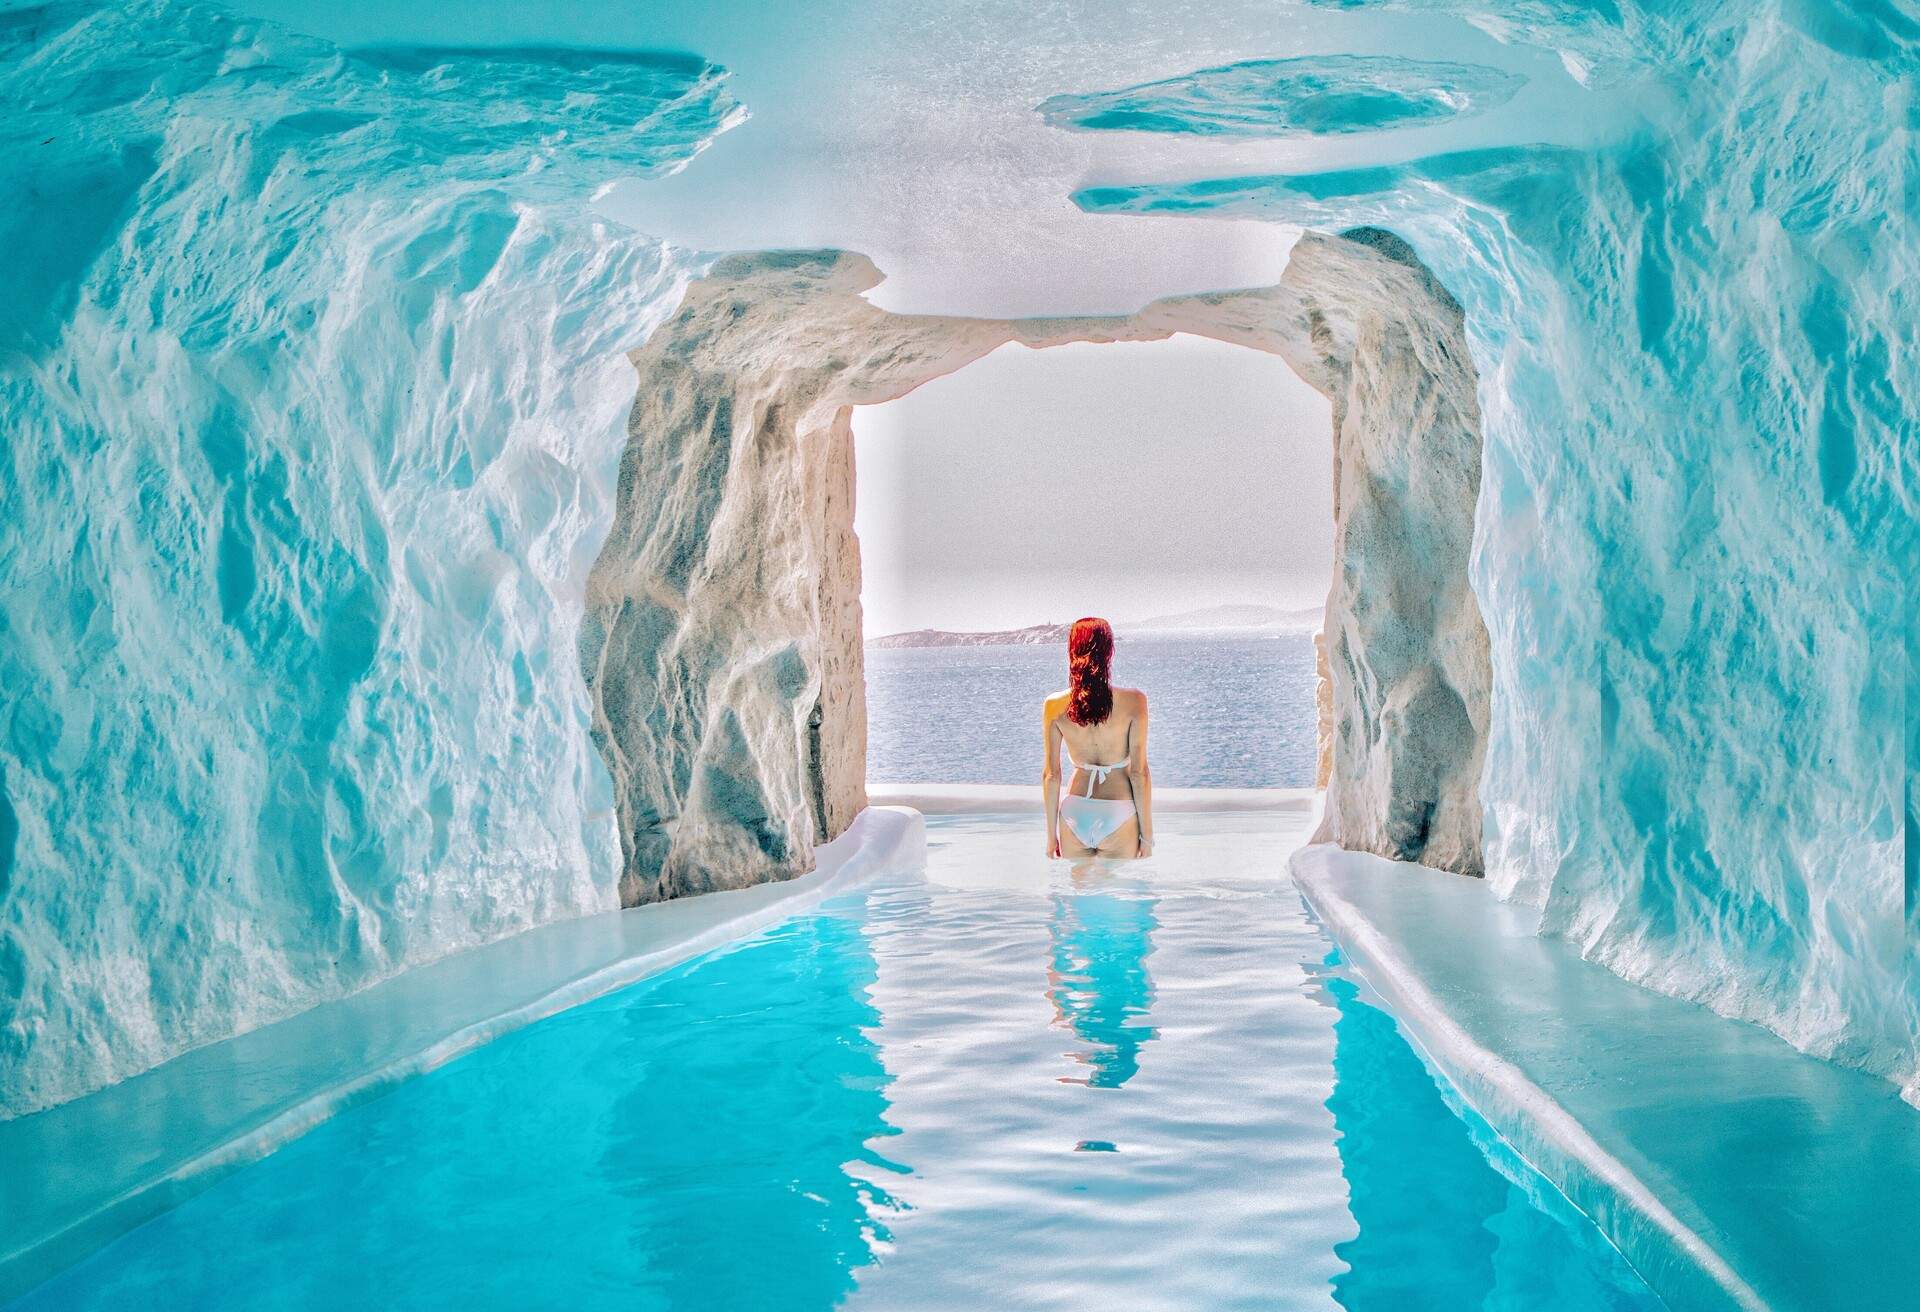 Luxury hotel pool in Mykonos, Greece